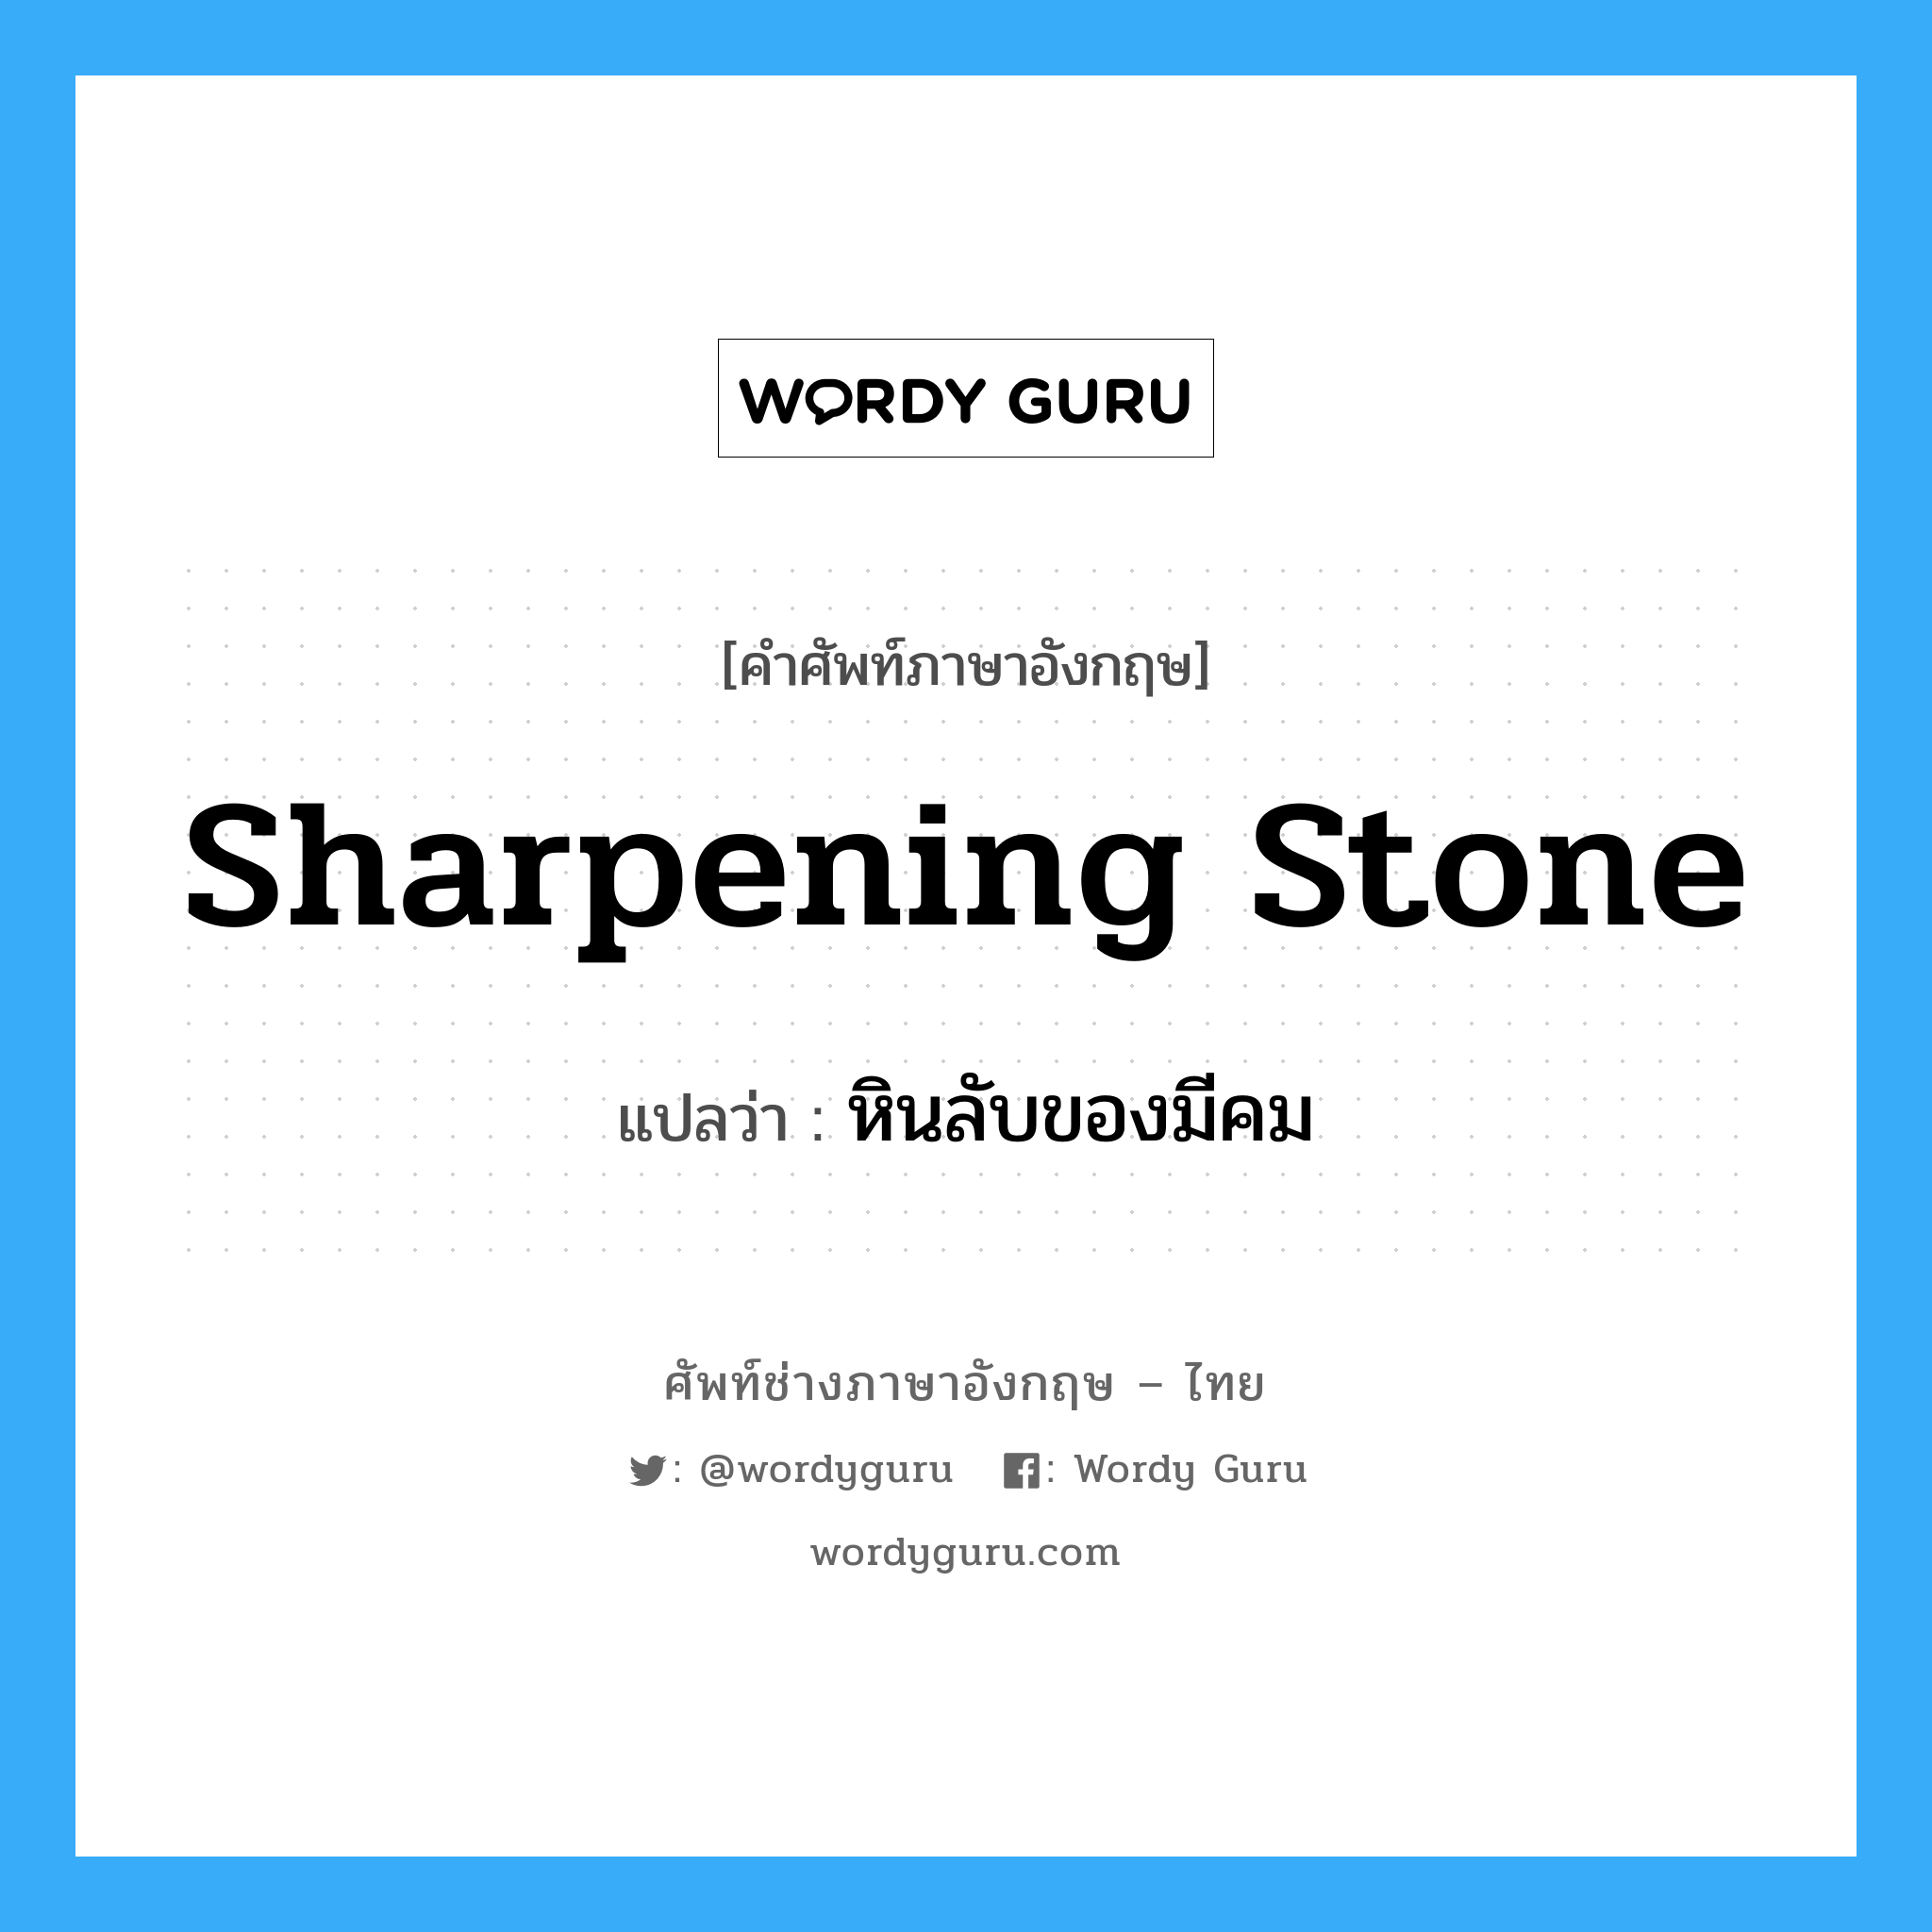 sharpening-stone แปลว่า?, คำศัพท์ช่างภาษาอังกฤษ - ไทย sharpening stone คำศัพท์ภาษาอังกฤษ sharpening stone แปลว่า หินลับของมีคม